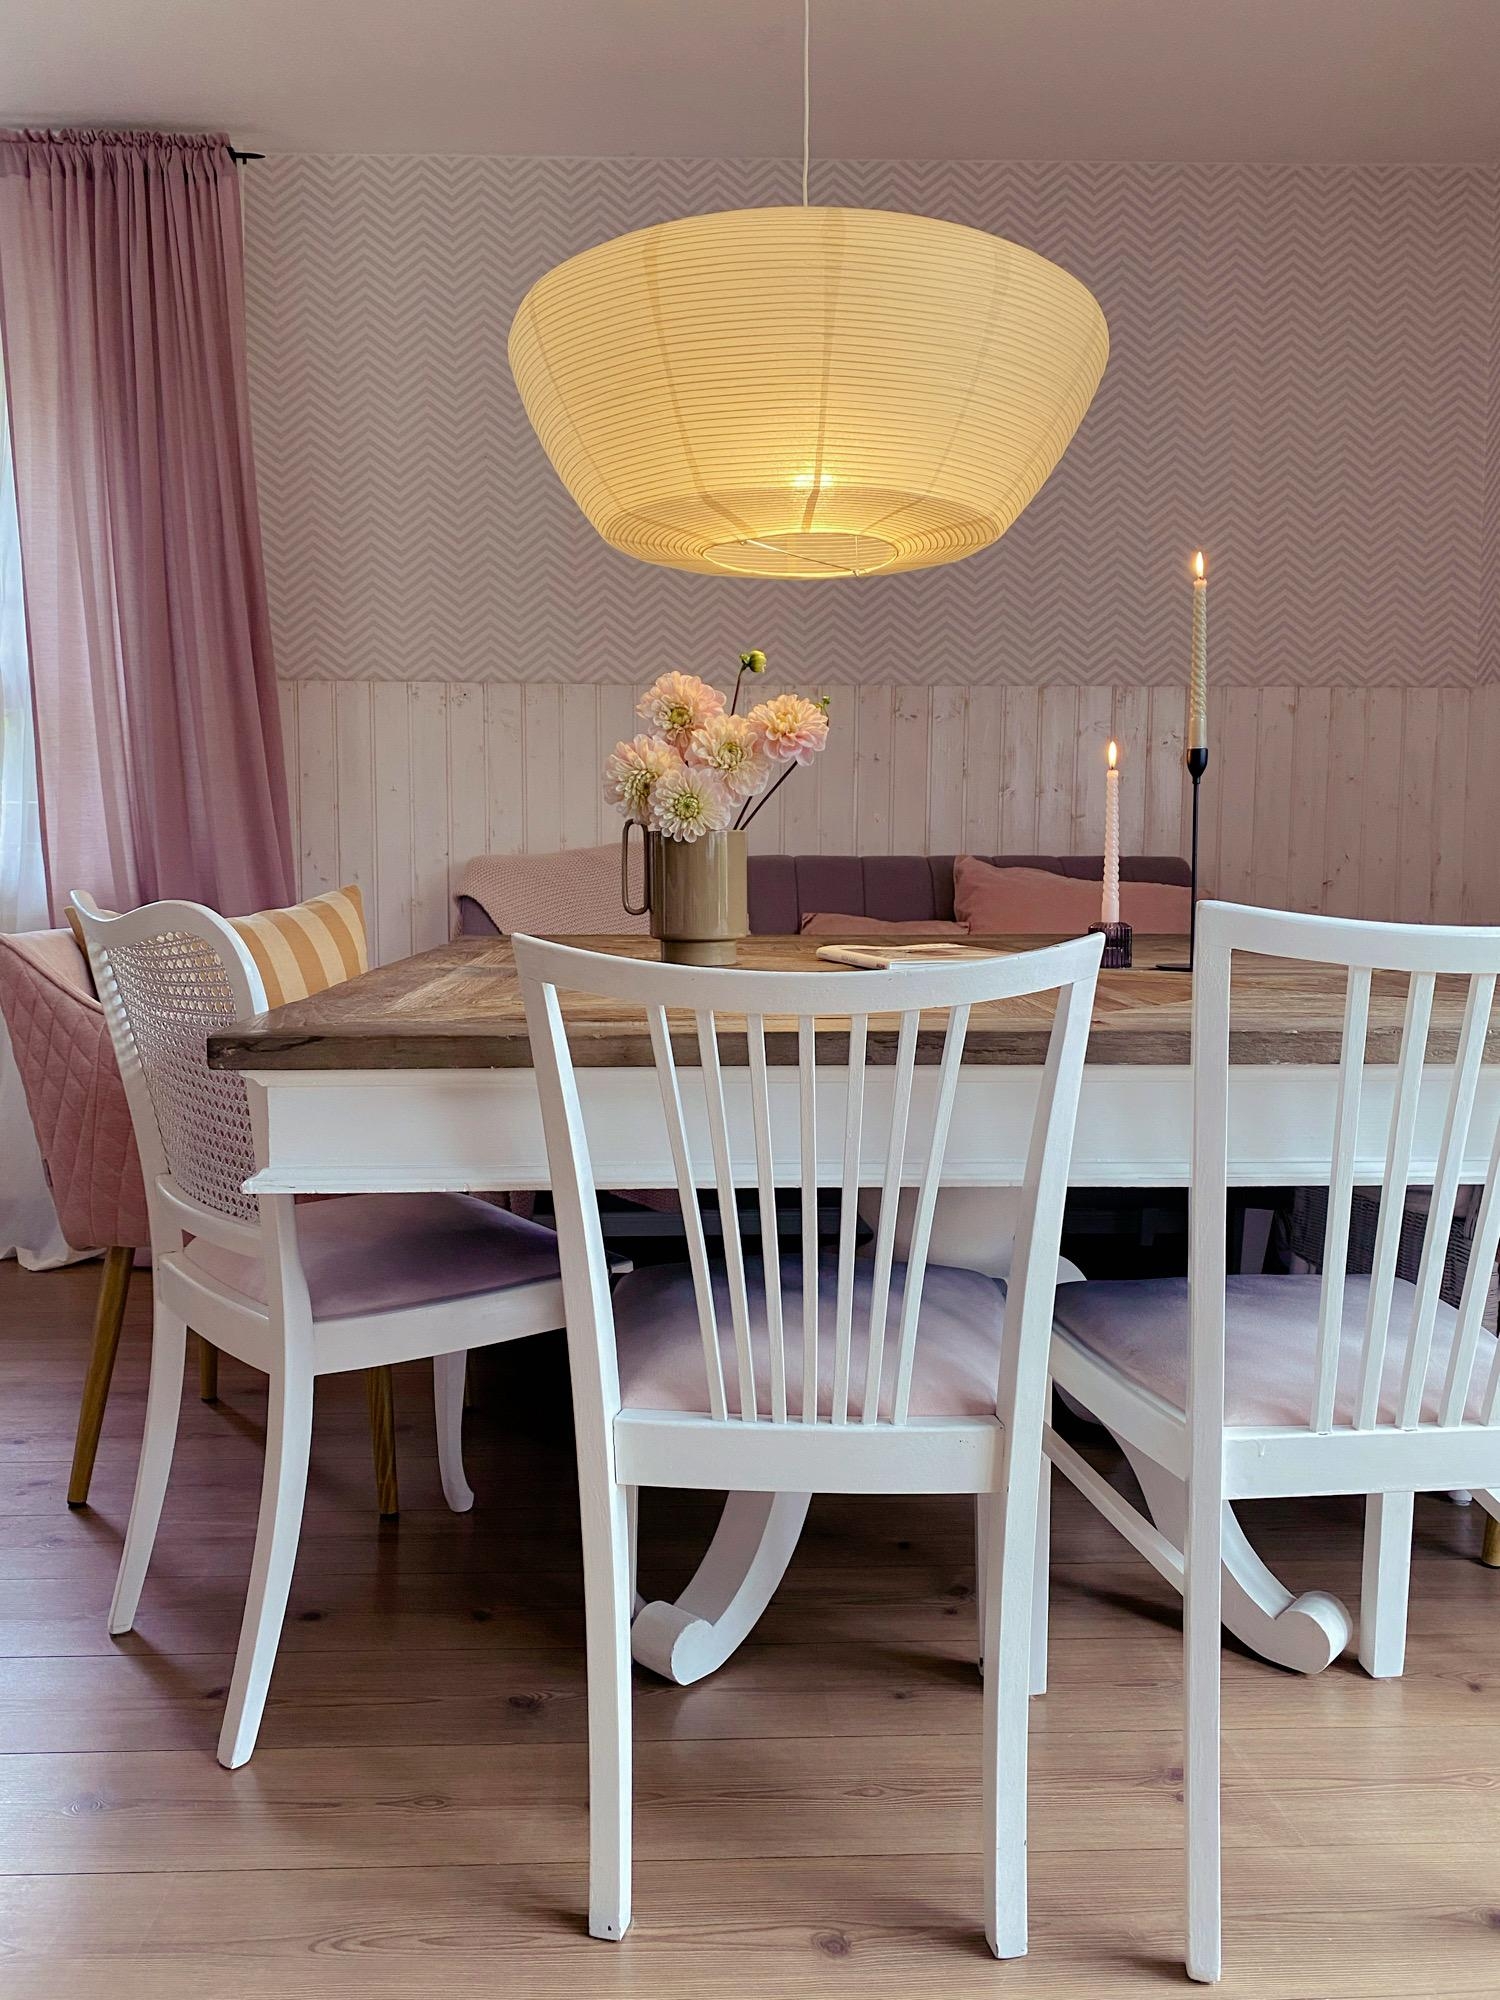 Esszimmer
#cozylight#esstischdeko#diningroom#tabledecor#candles#dahlia 